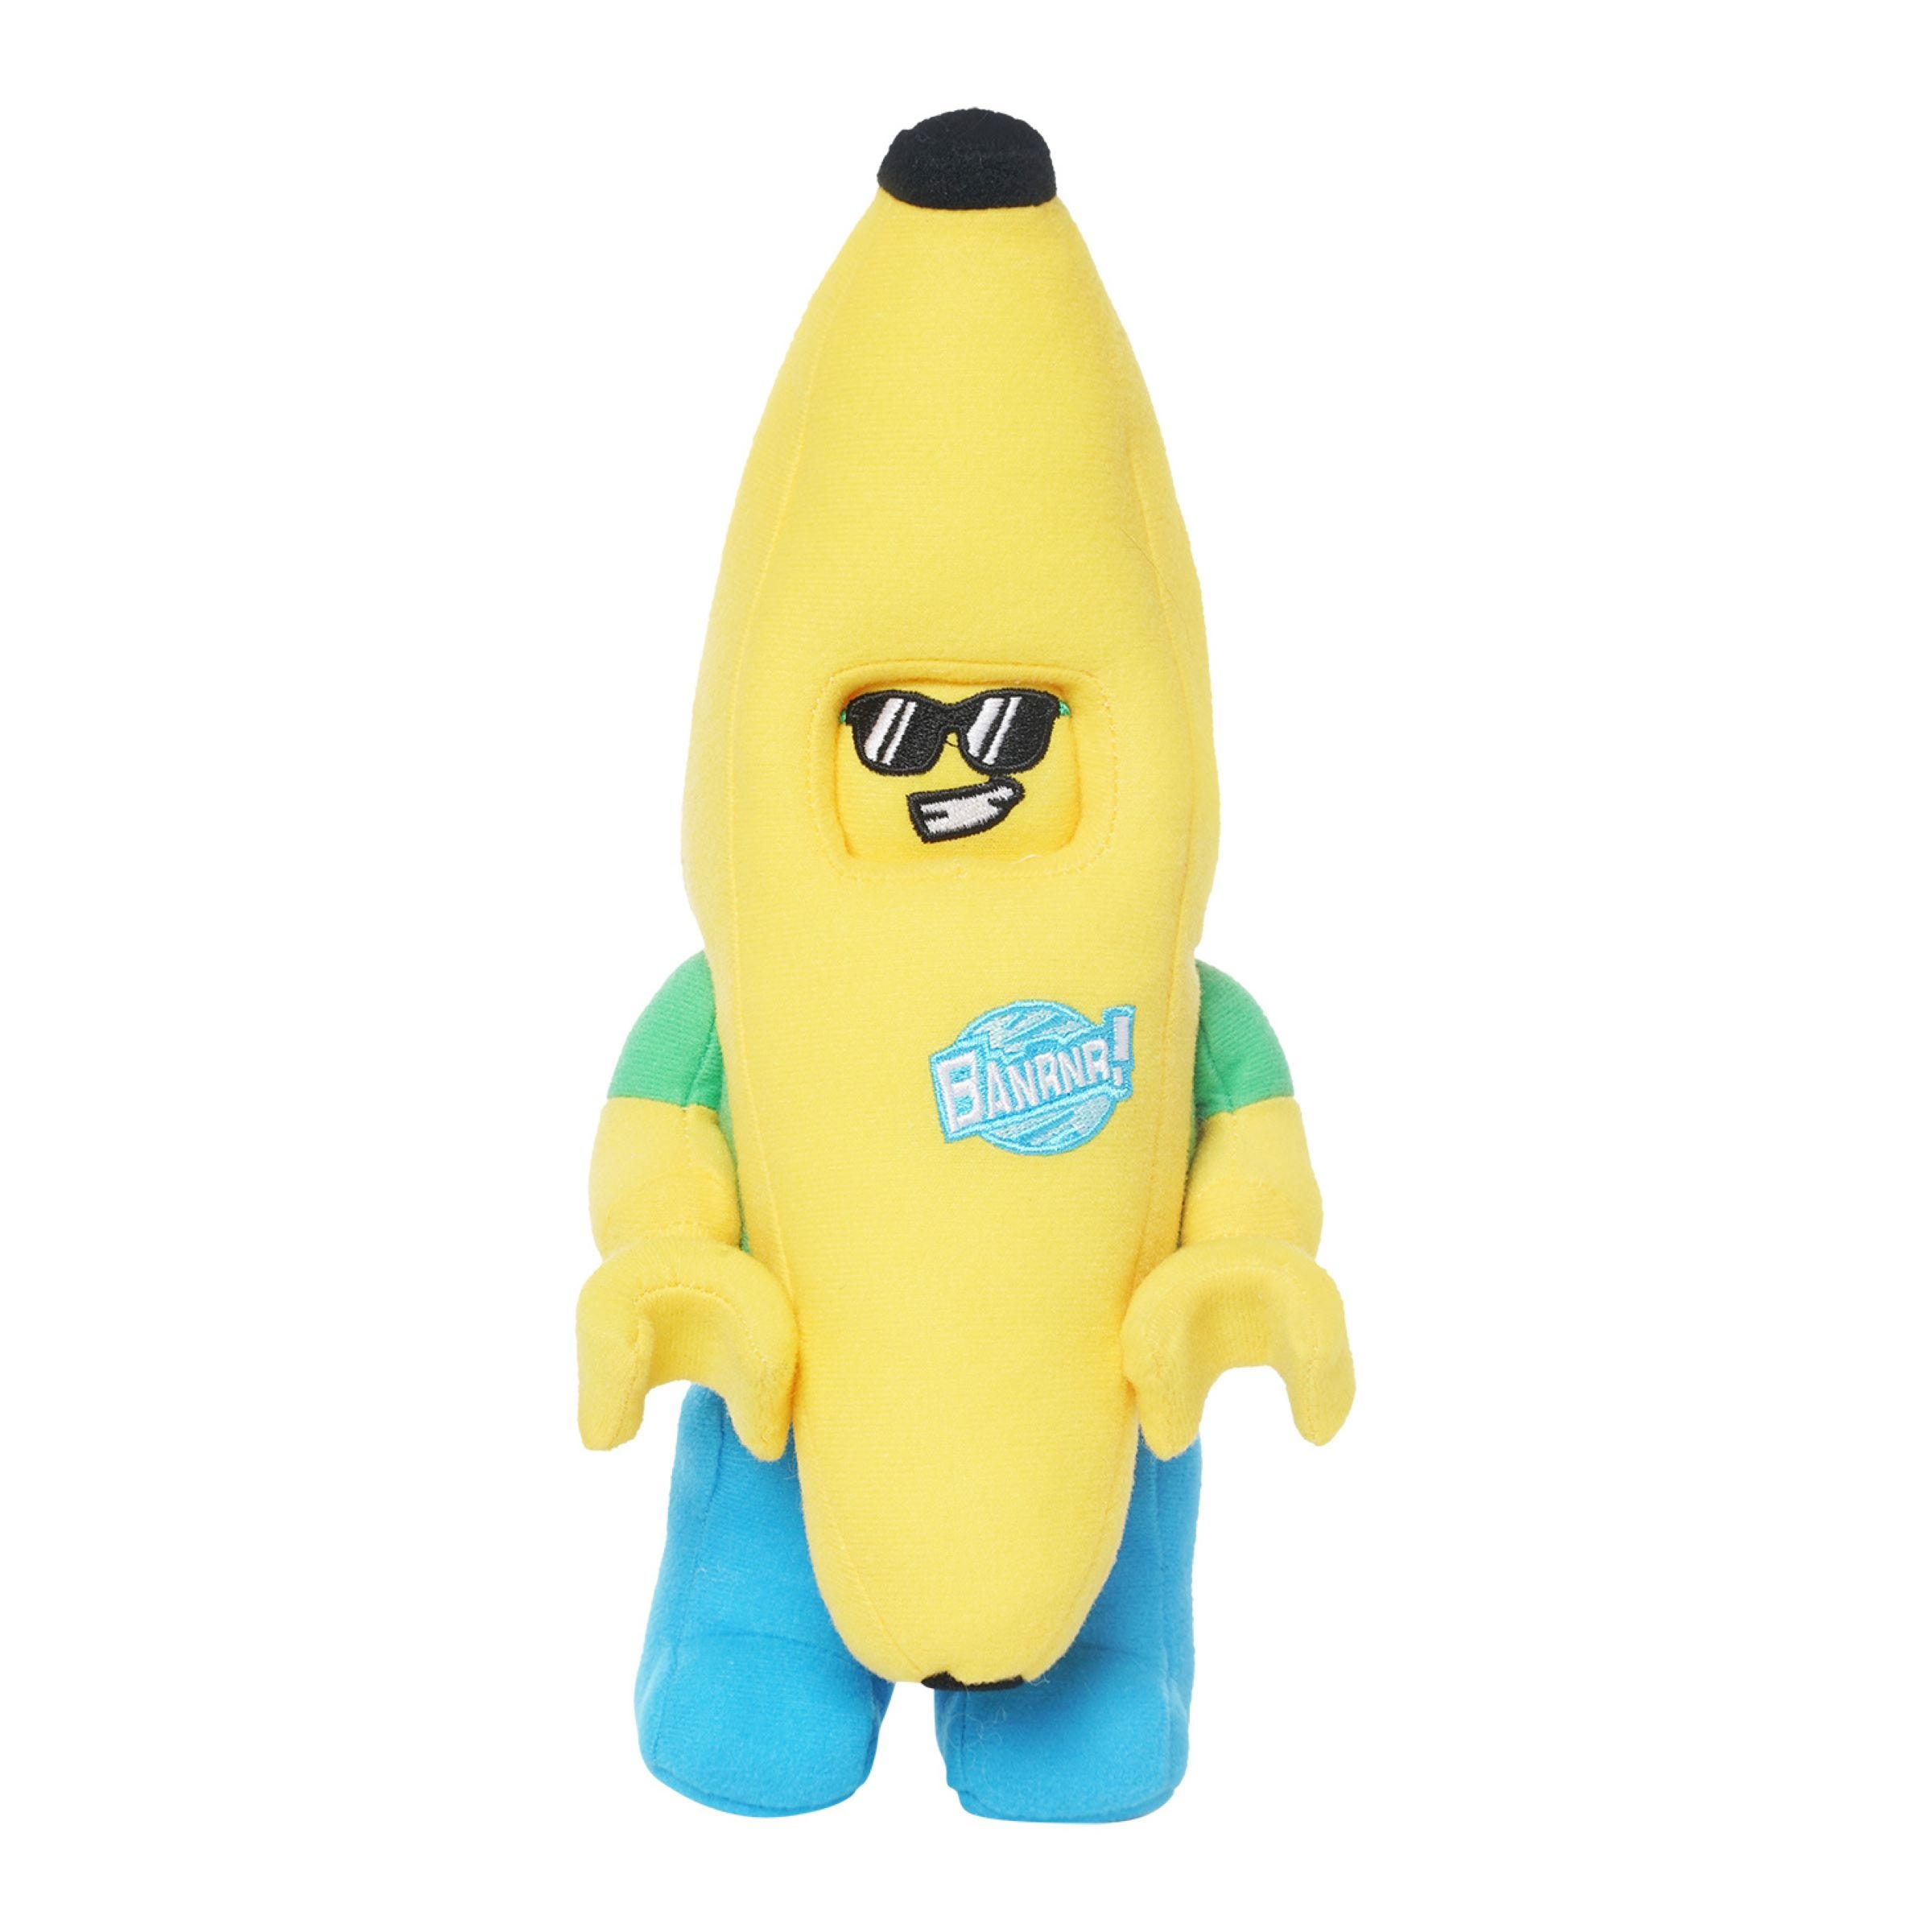 Peluche dell’Uomo Banana